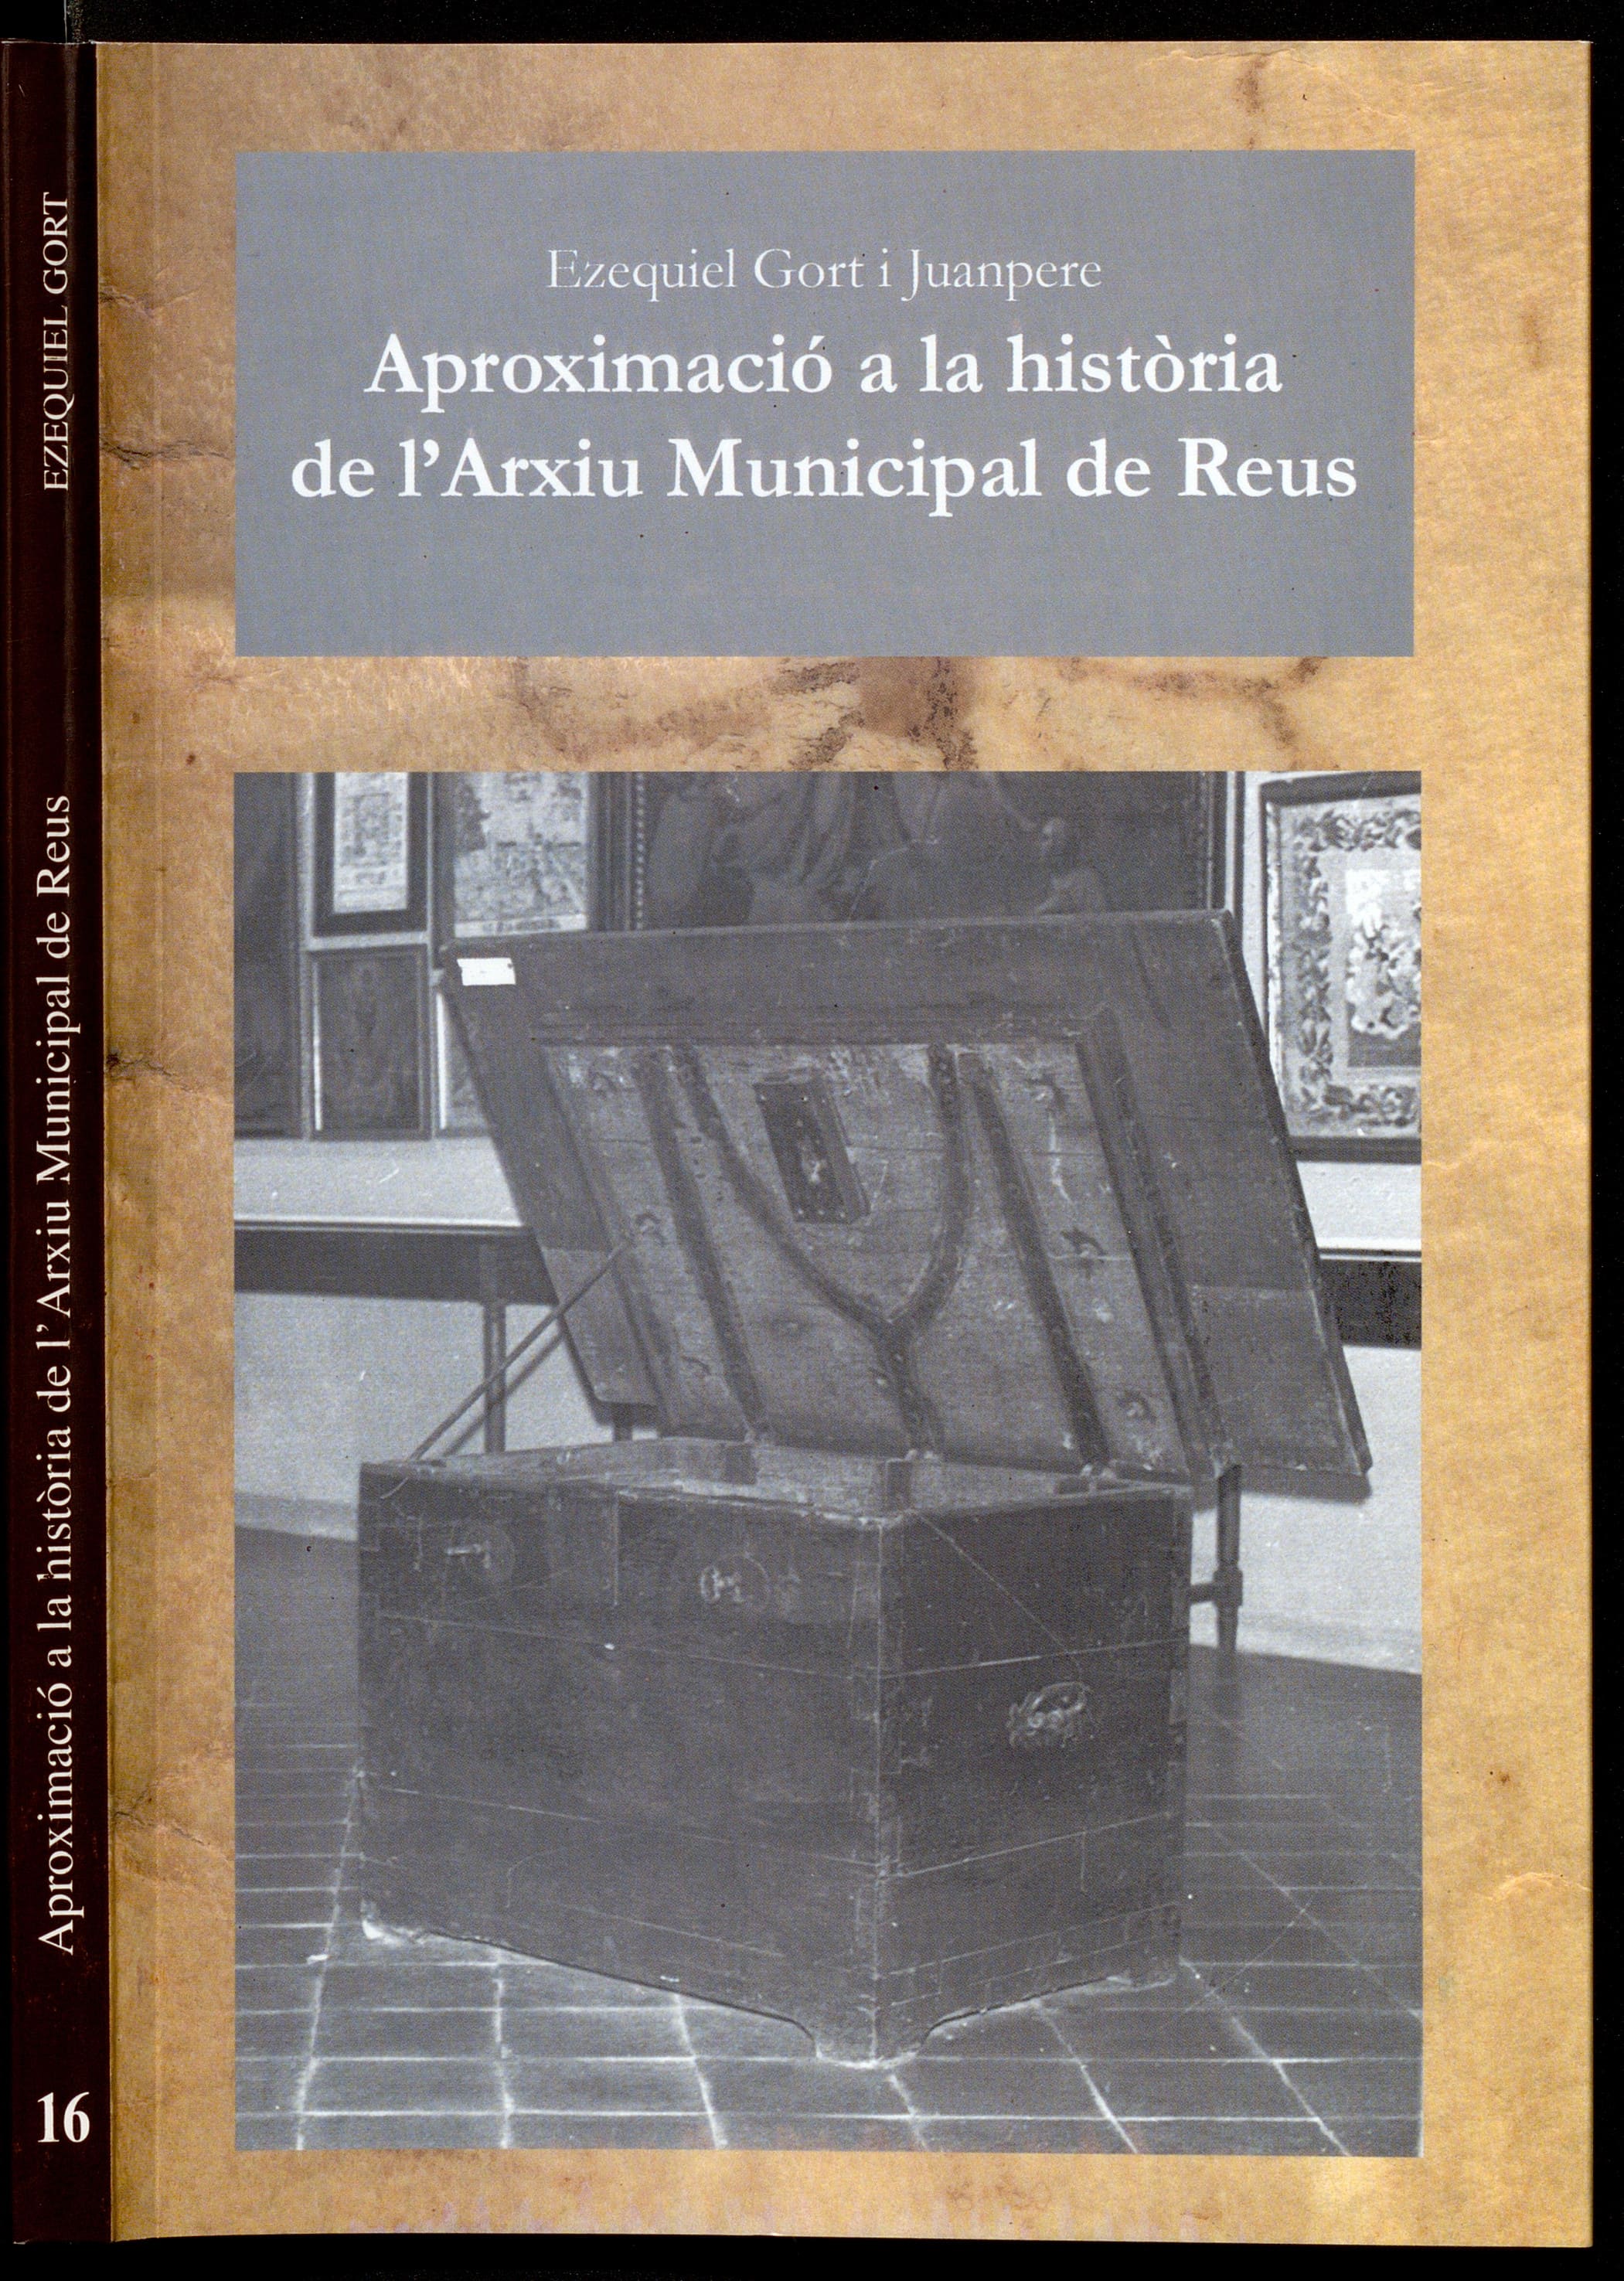 Aproximació a la història de l'Arxiu Municipal de Reus